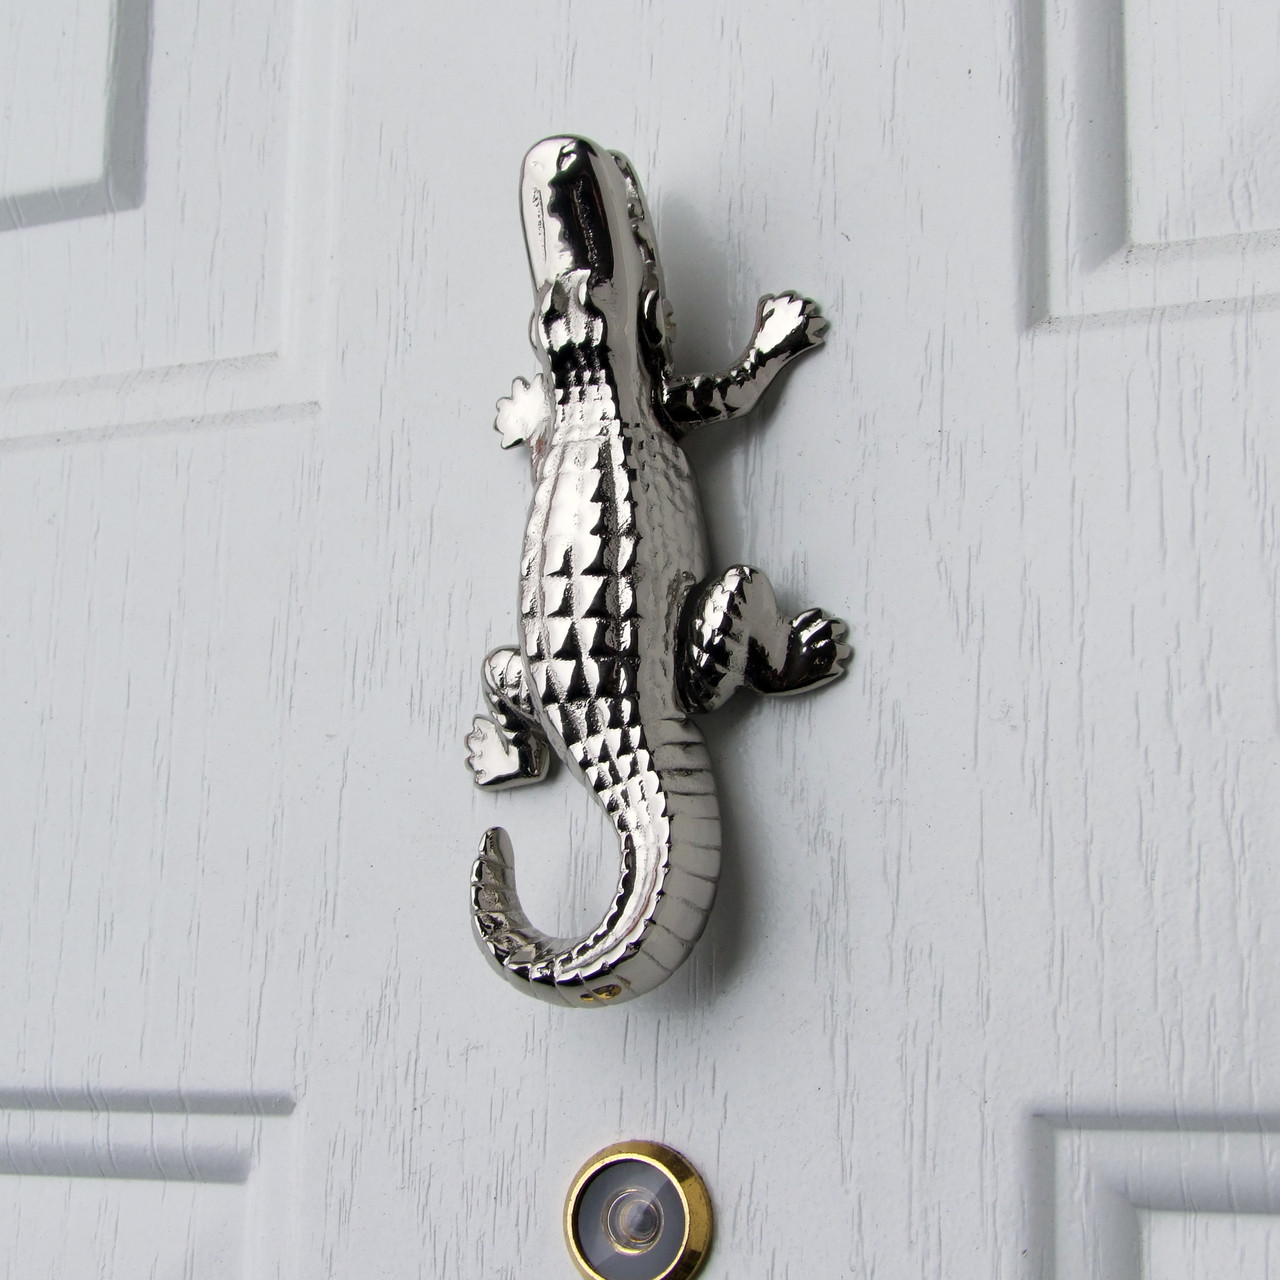 Alligator Door Knocker by Michael Healy